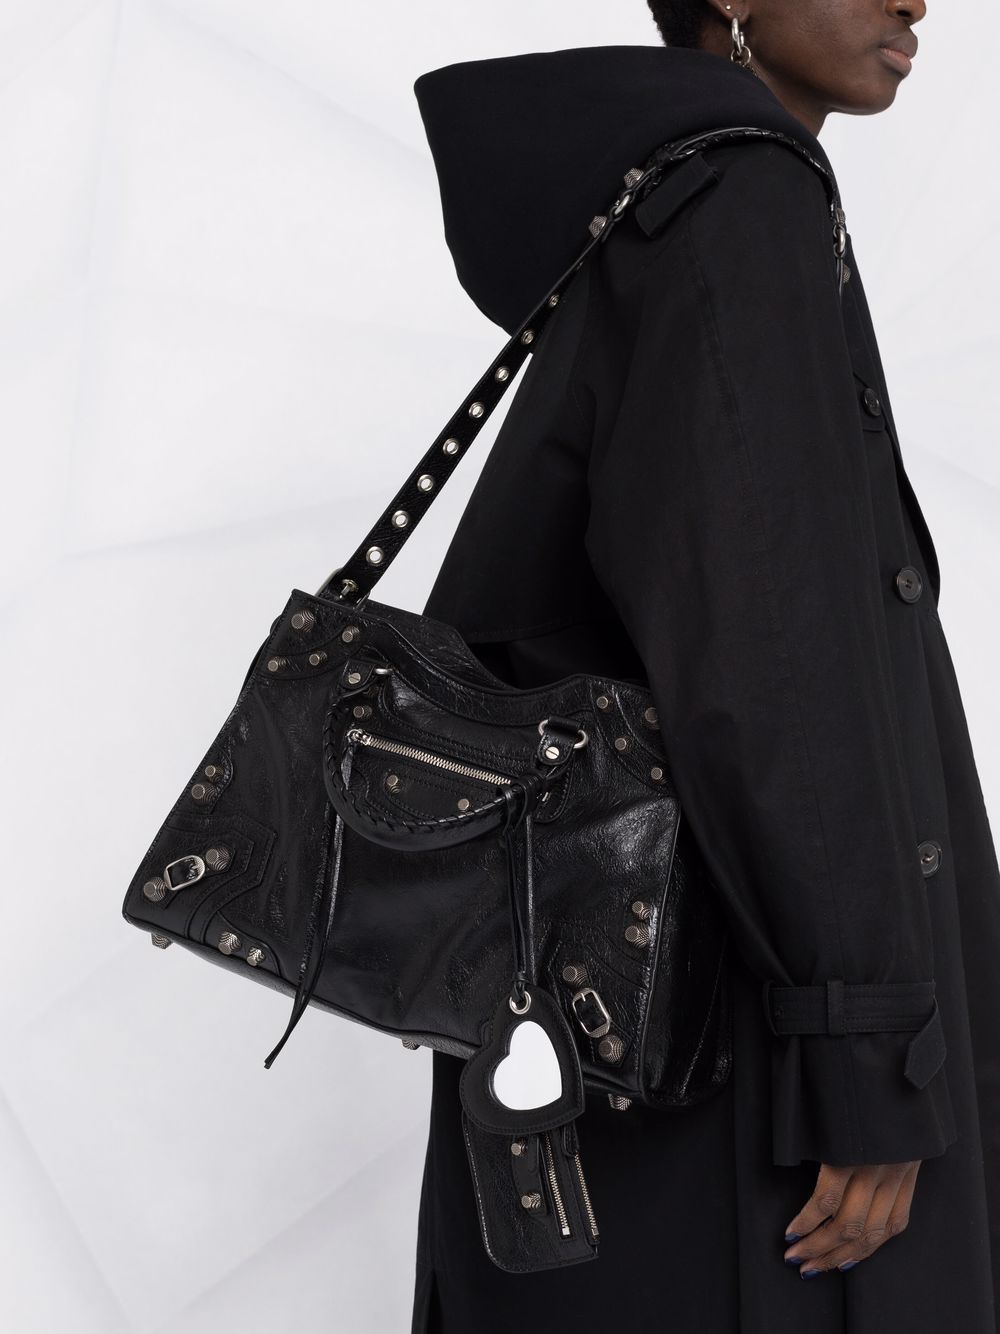 Túi vai đeo tay da bóng màu đen được bện thủ công kèm theo ngăn đựng đồ và gương phụ nữ NEO CAGOLE CITY